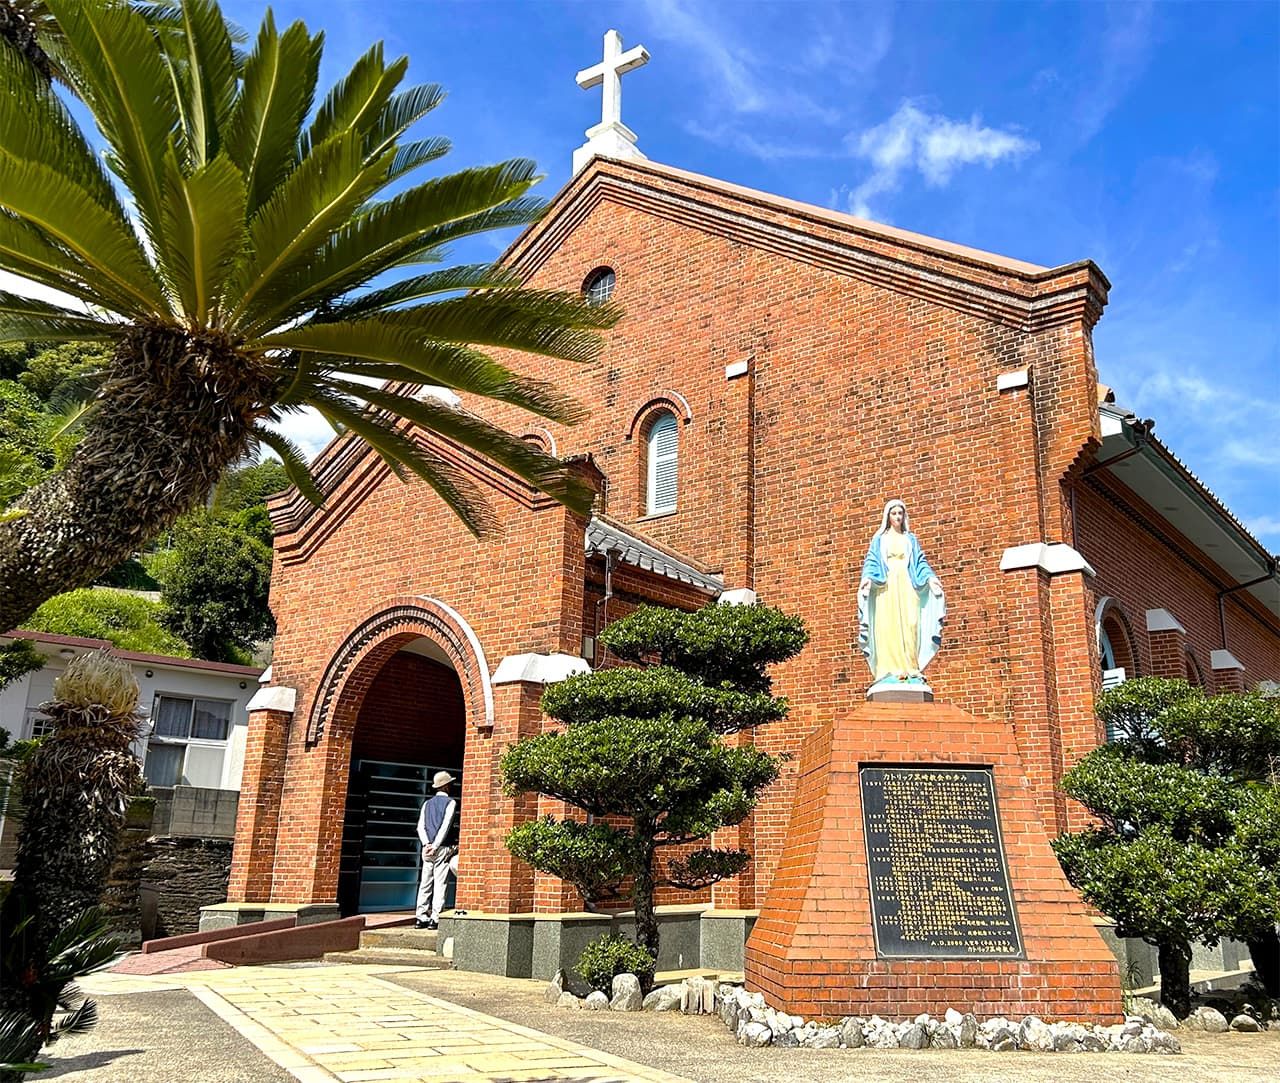 La iglesia de Kurosaki, construida en ladrillo, con su característica estatua de Santa María con ambos brazos abiertos. Quedó completada en 1920. El lugar puede visitarse en autobús, pues se encuentra a unos pasos de la parada Kurosaki Kyōkai-mae. (Fotografía: Amano Hisaki)